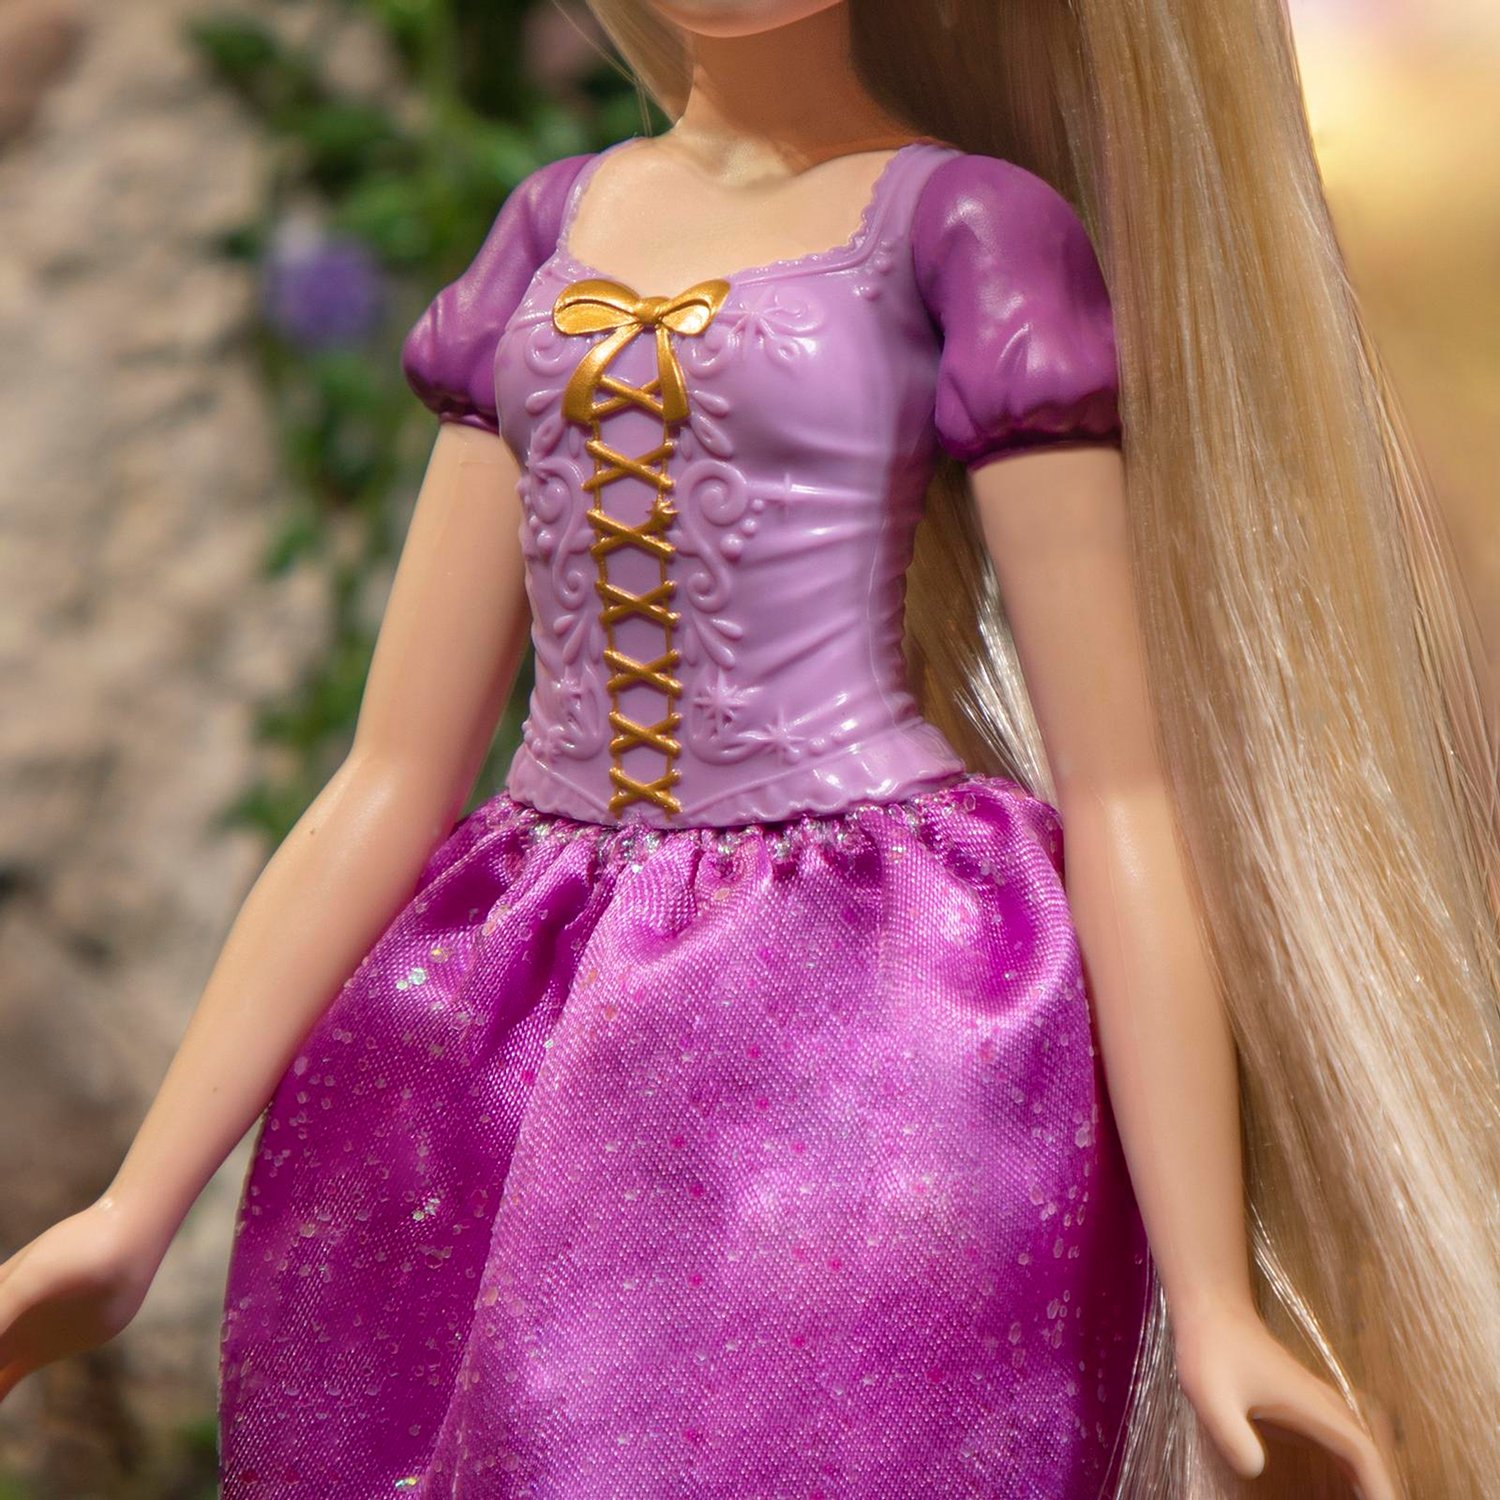 Кукла Disney Princess F1057 Рапунцель Локоны